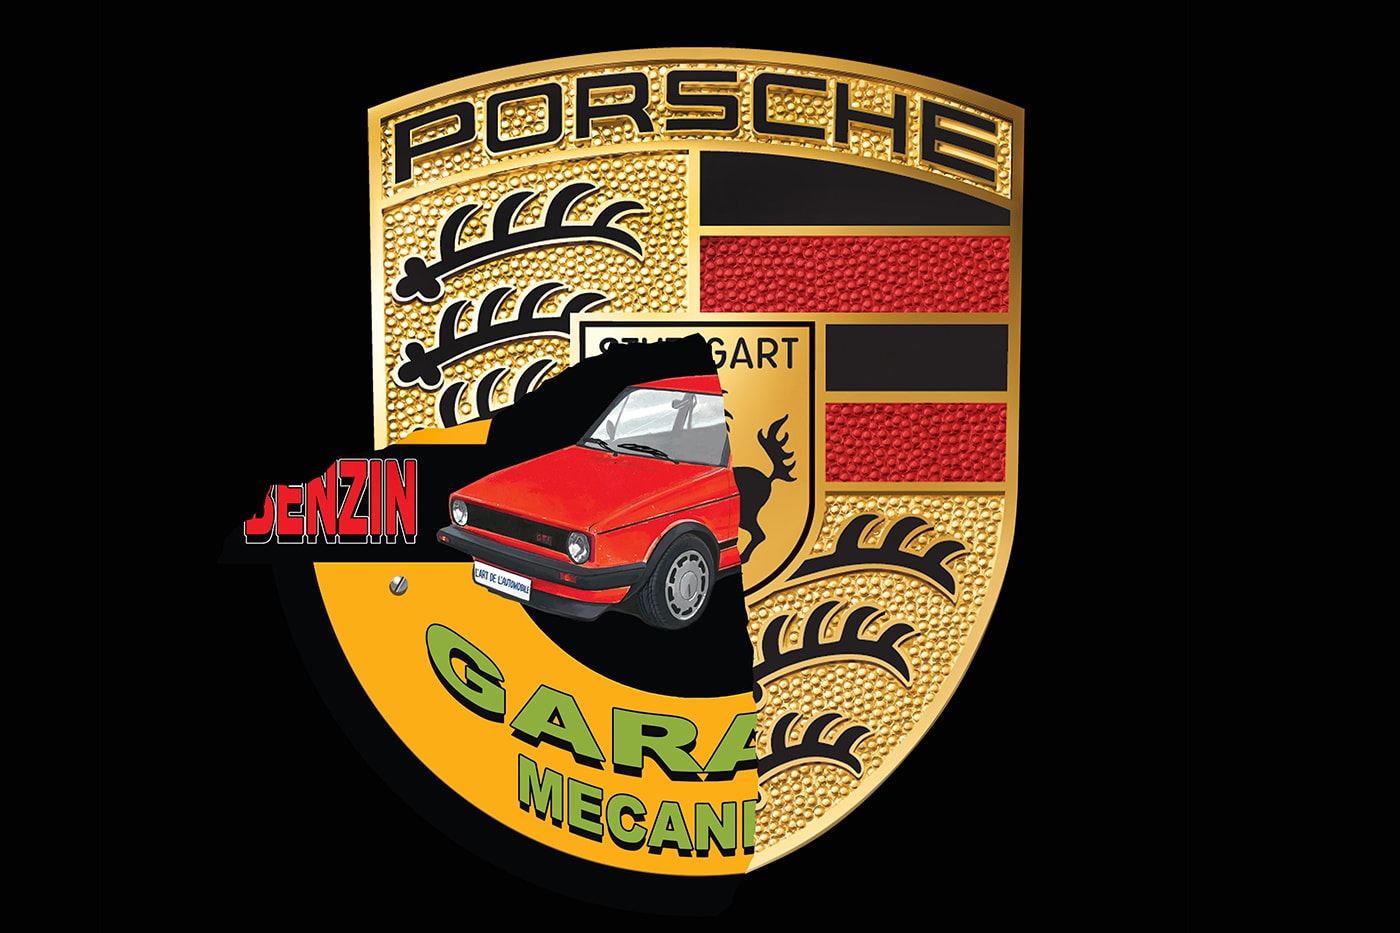 Porsche x L'Art de l'Automobile 全新聯乘系列預告曝光